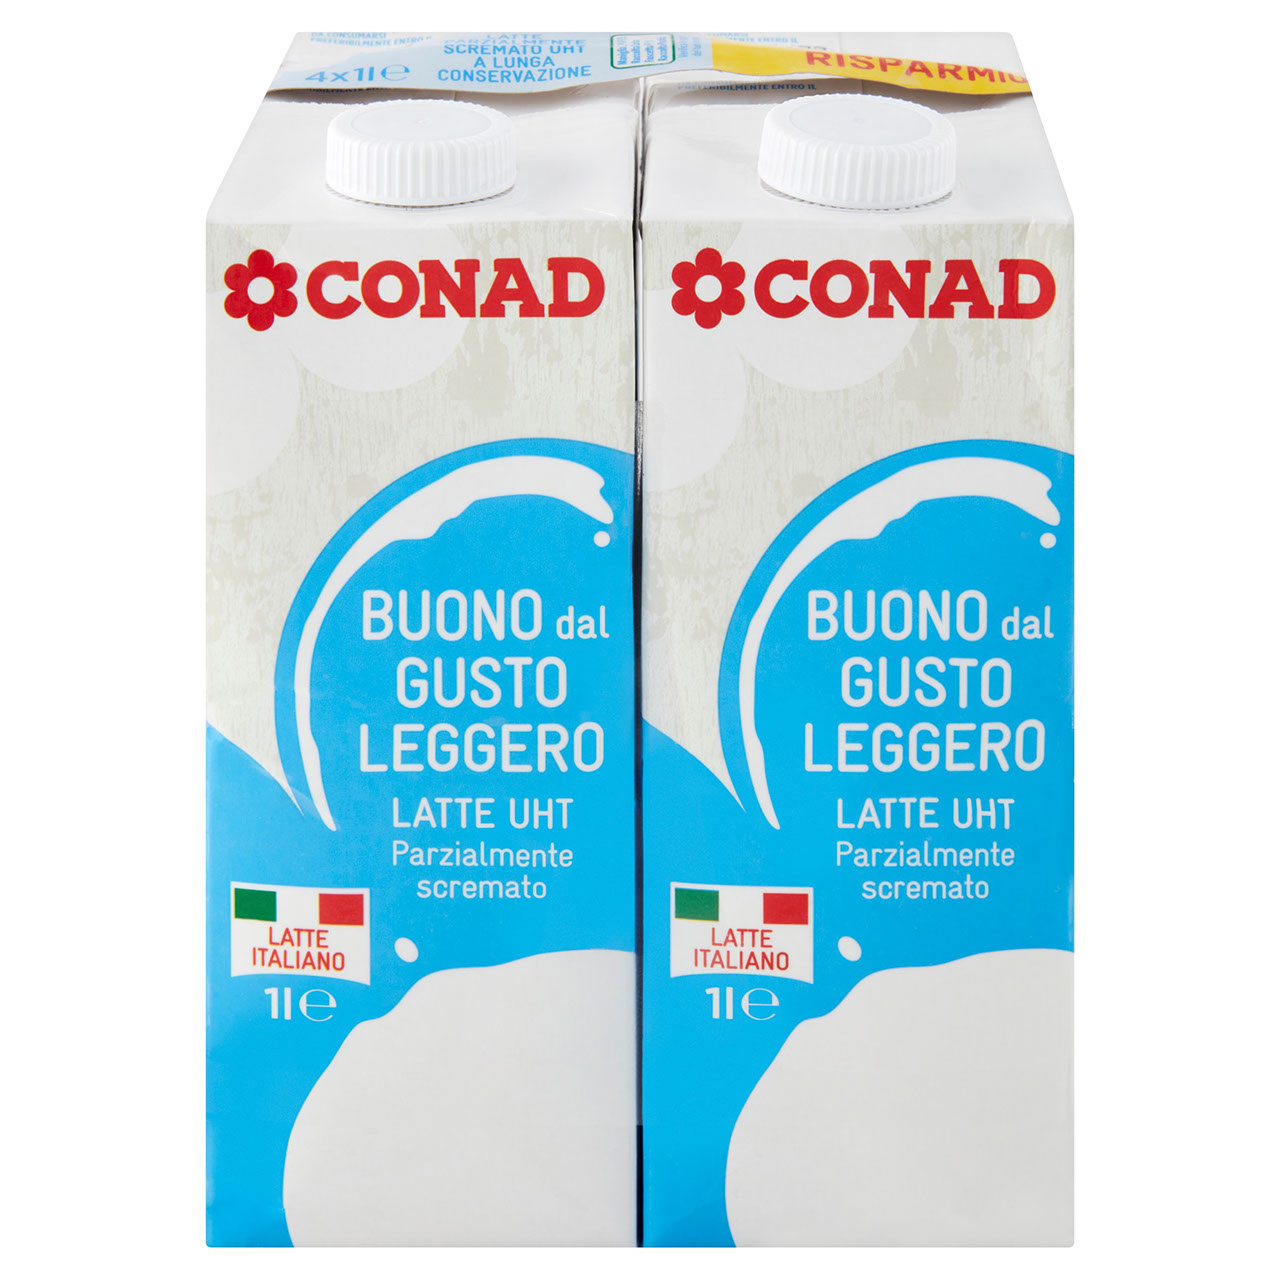 CONAD Latte UHT Parzialmente scremato Buono dal Gusto Leggero 4 x 1 l